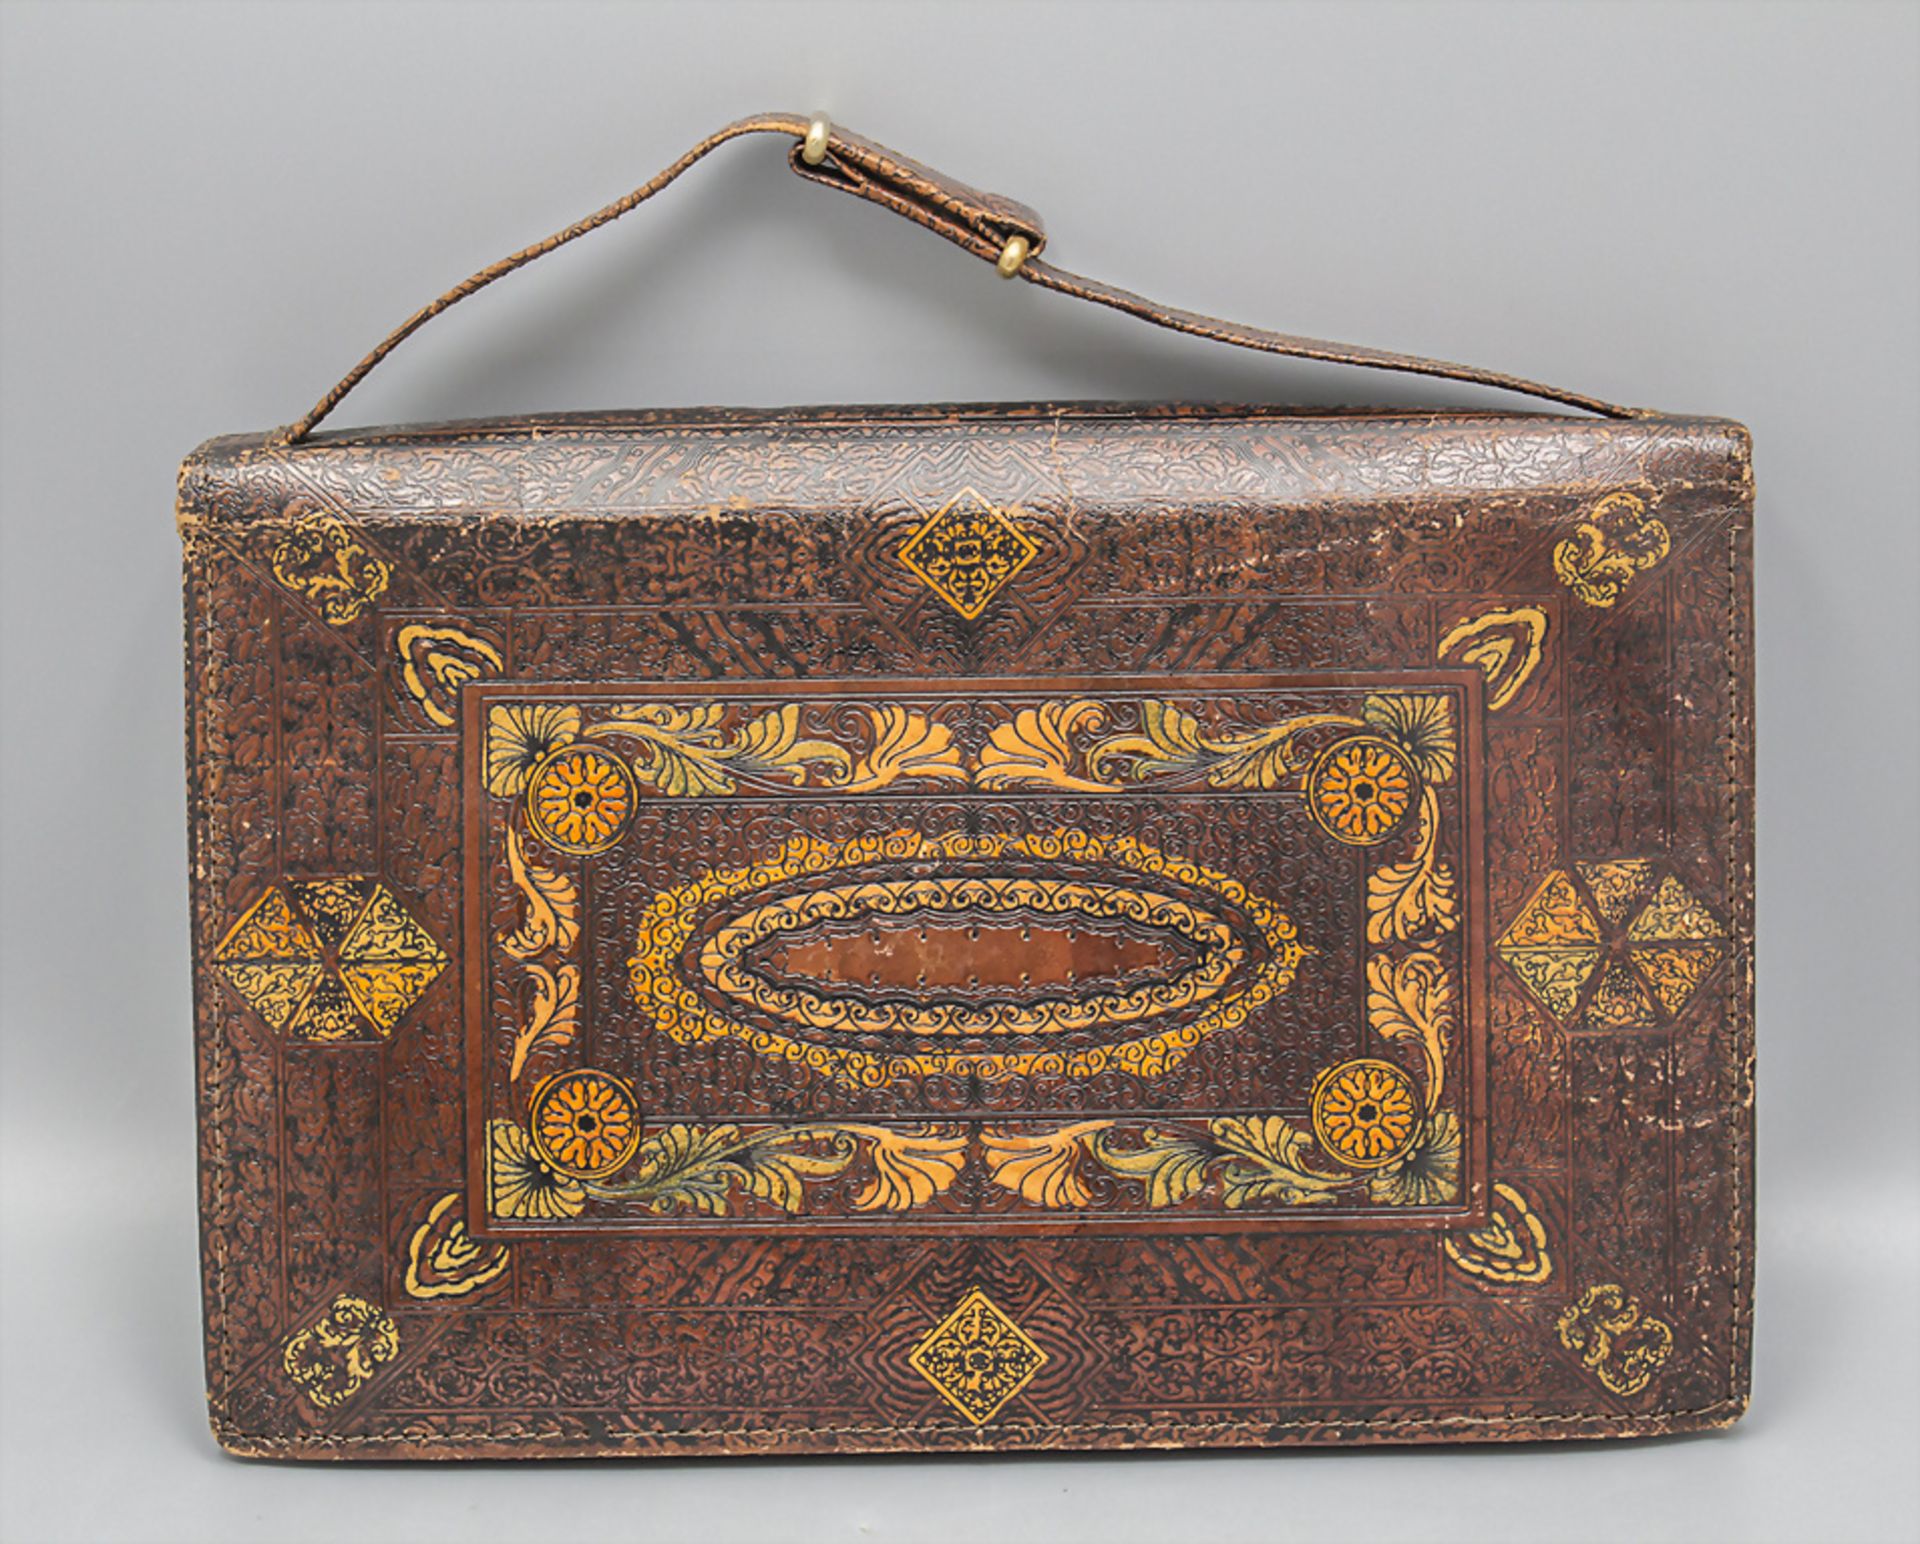 Gemusterte Lederhandtasche / A patterned leather handbag, wohl Italien - Image 2 of 5